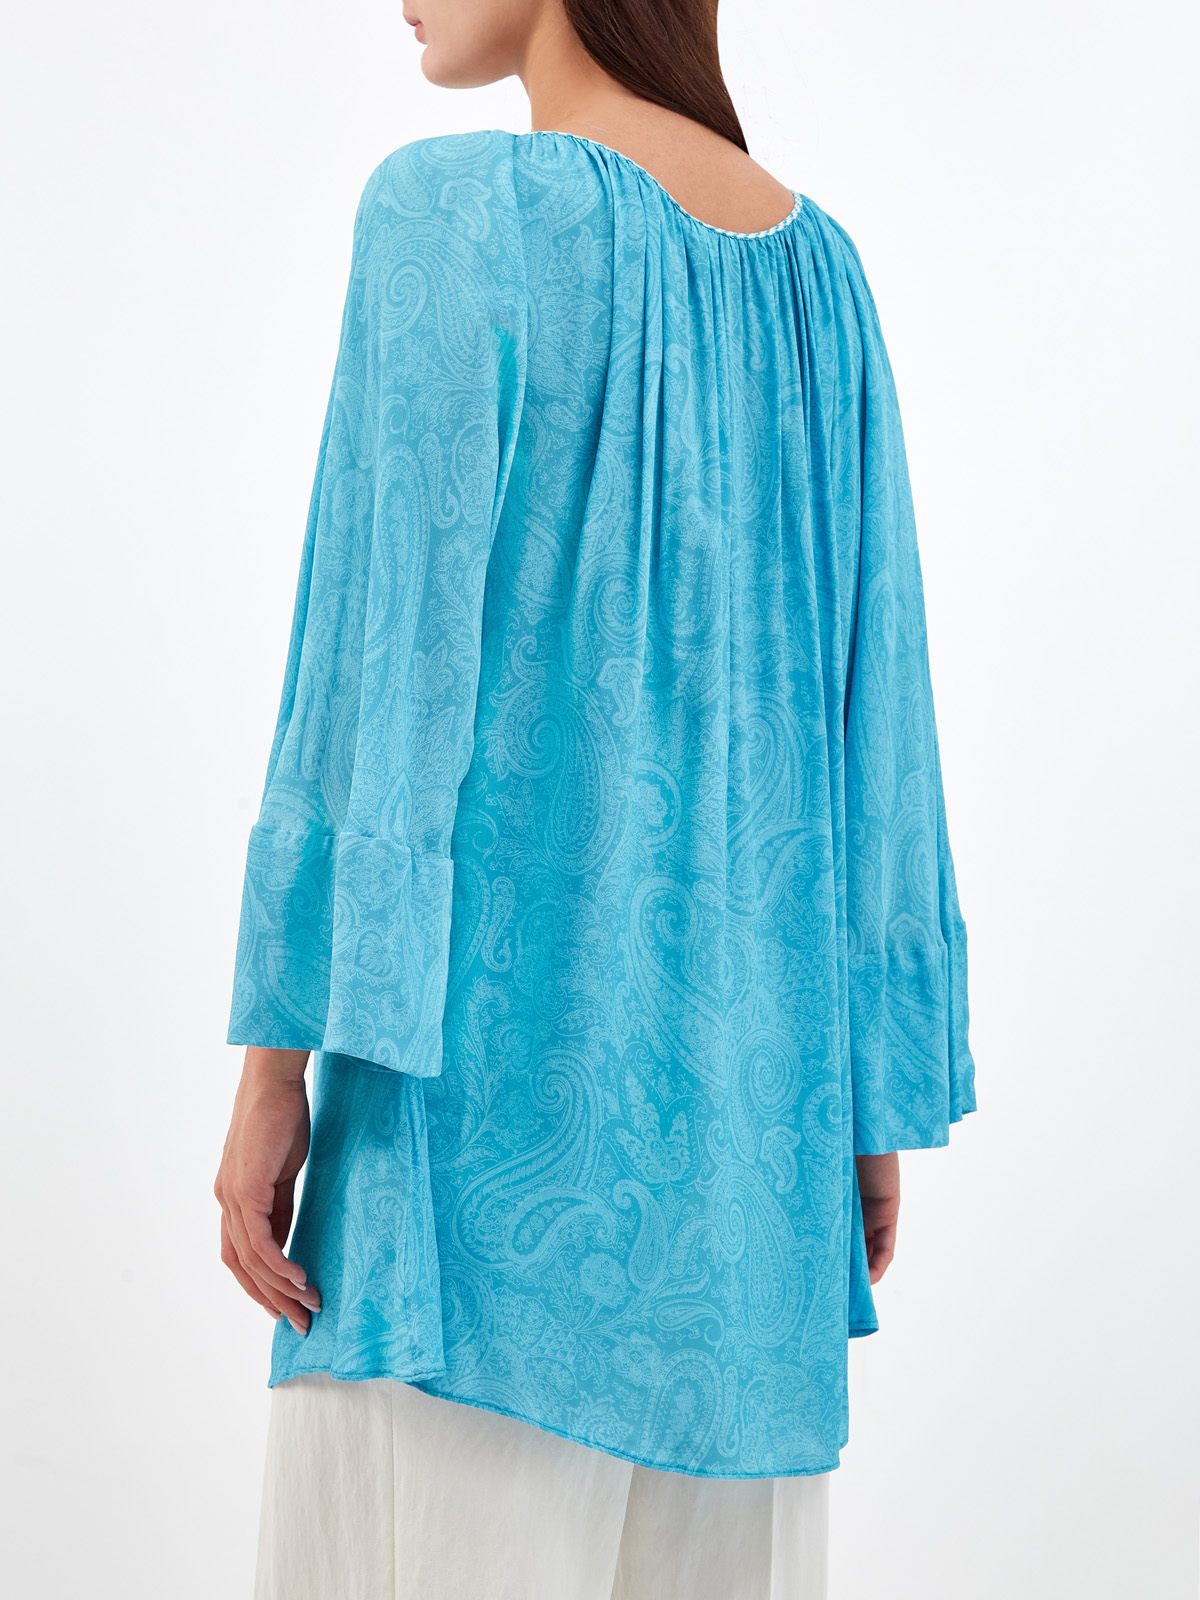 Легкая блуза с плетеными кисточками и принтом в тон ETRO, цвет голубой, размер 40;42;44;46;38 - фото 4